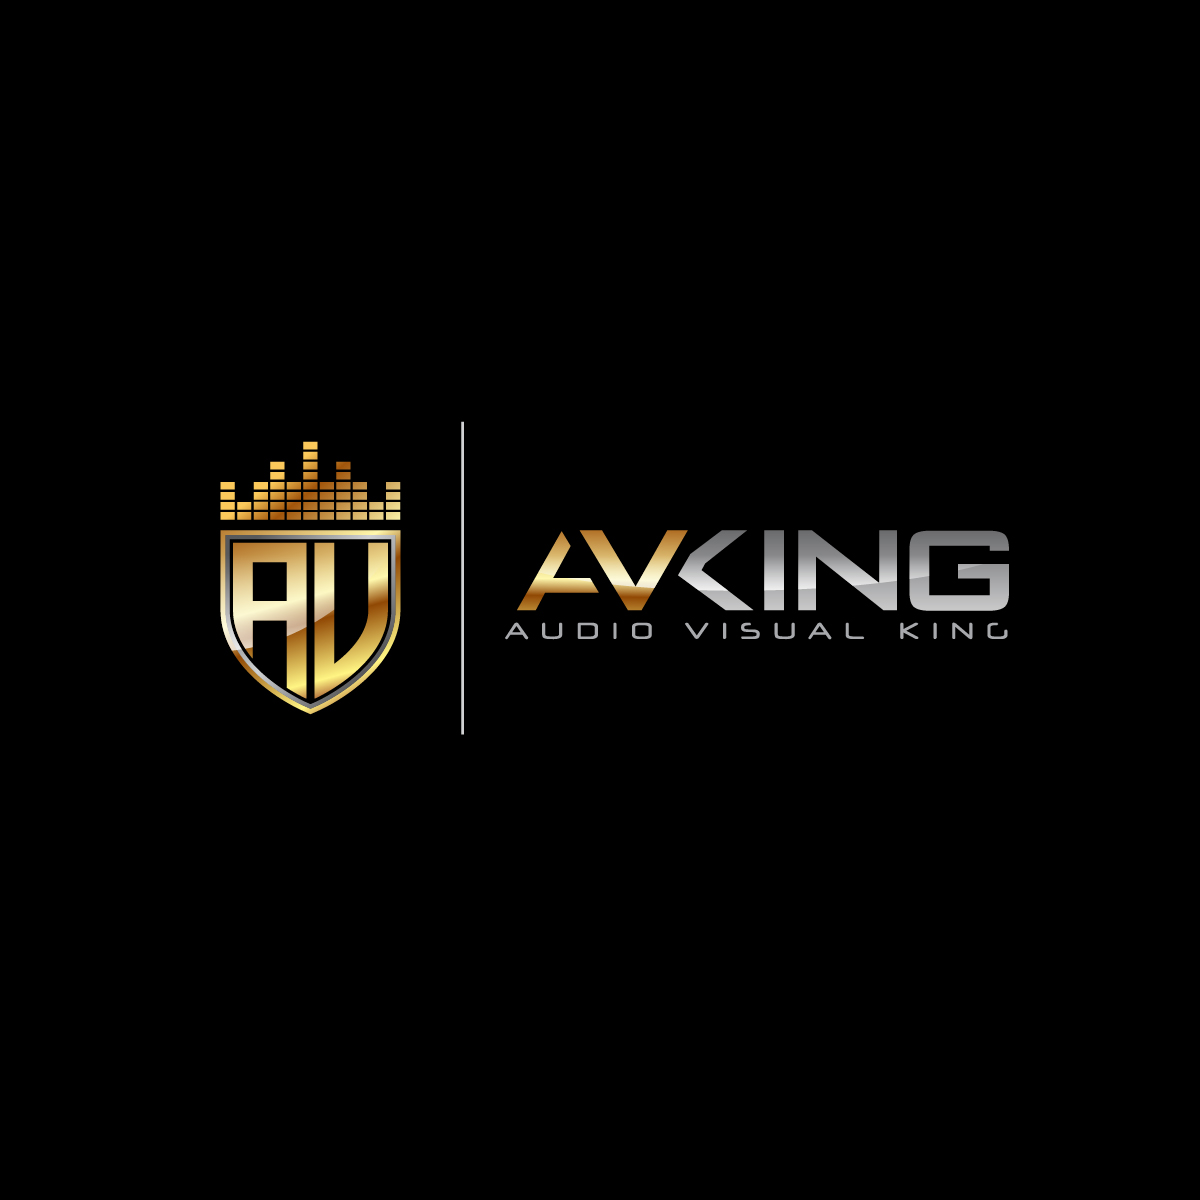 The AV King